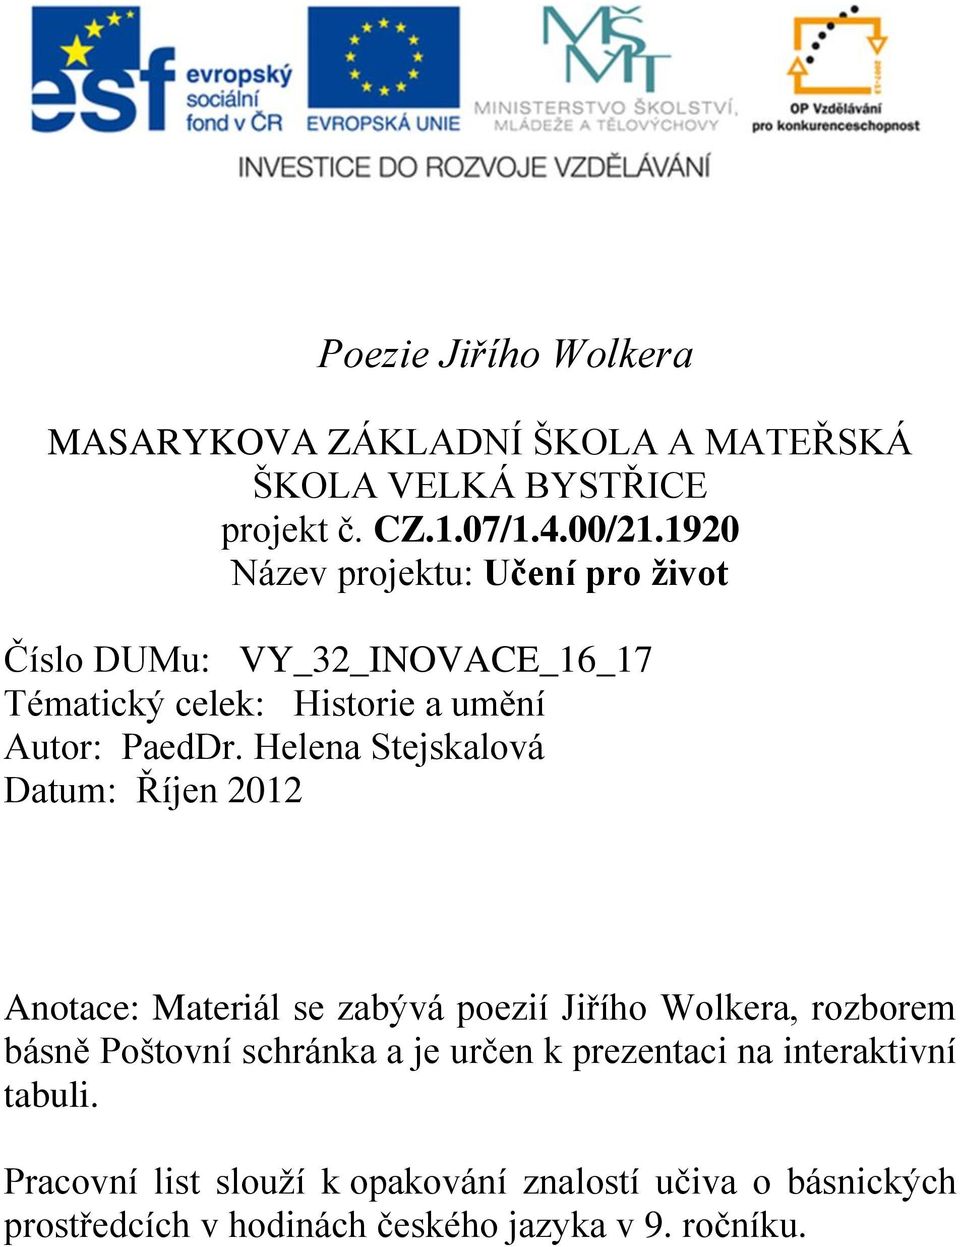 Helena tejskalová atum: Říjen 2012 notace: Materiál se zabývá poezií Jiřího Wolkera, rozborem básně oštovní schránka